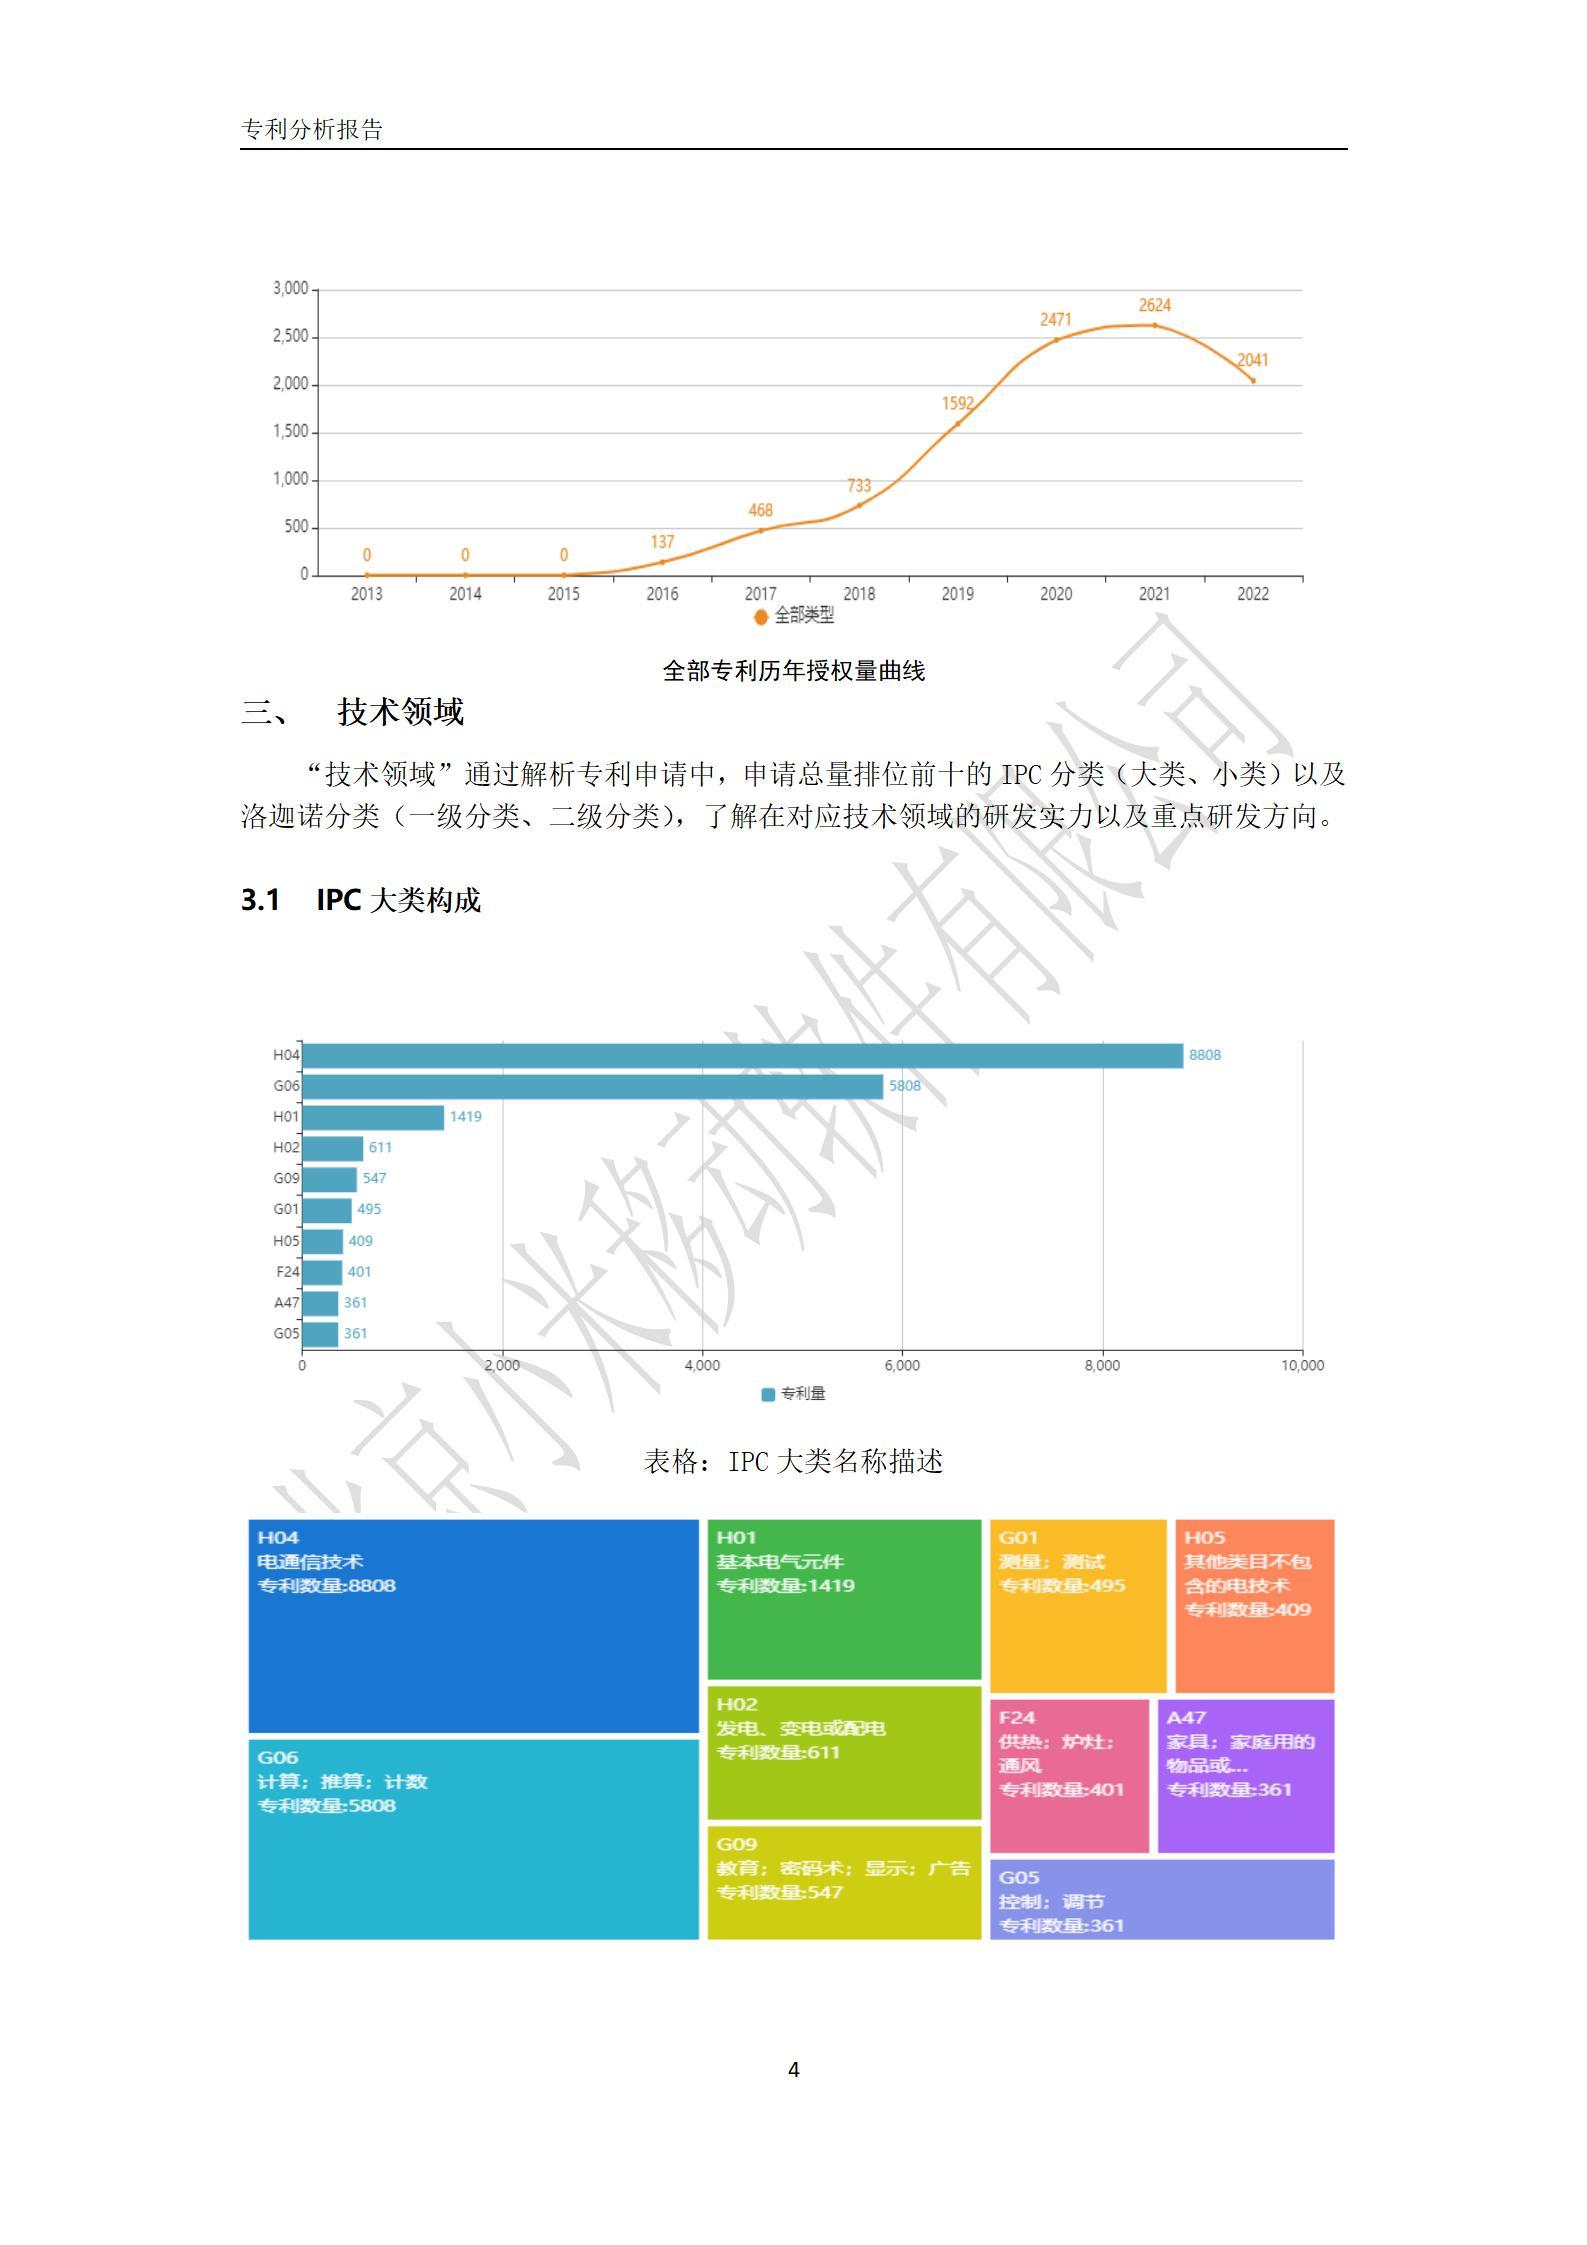 北京小米移动软件有限公司专利分析报告-4.jpg